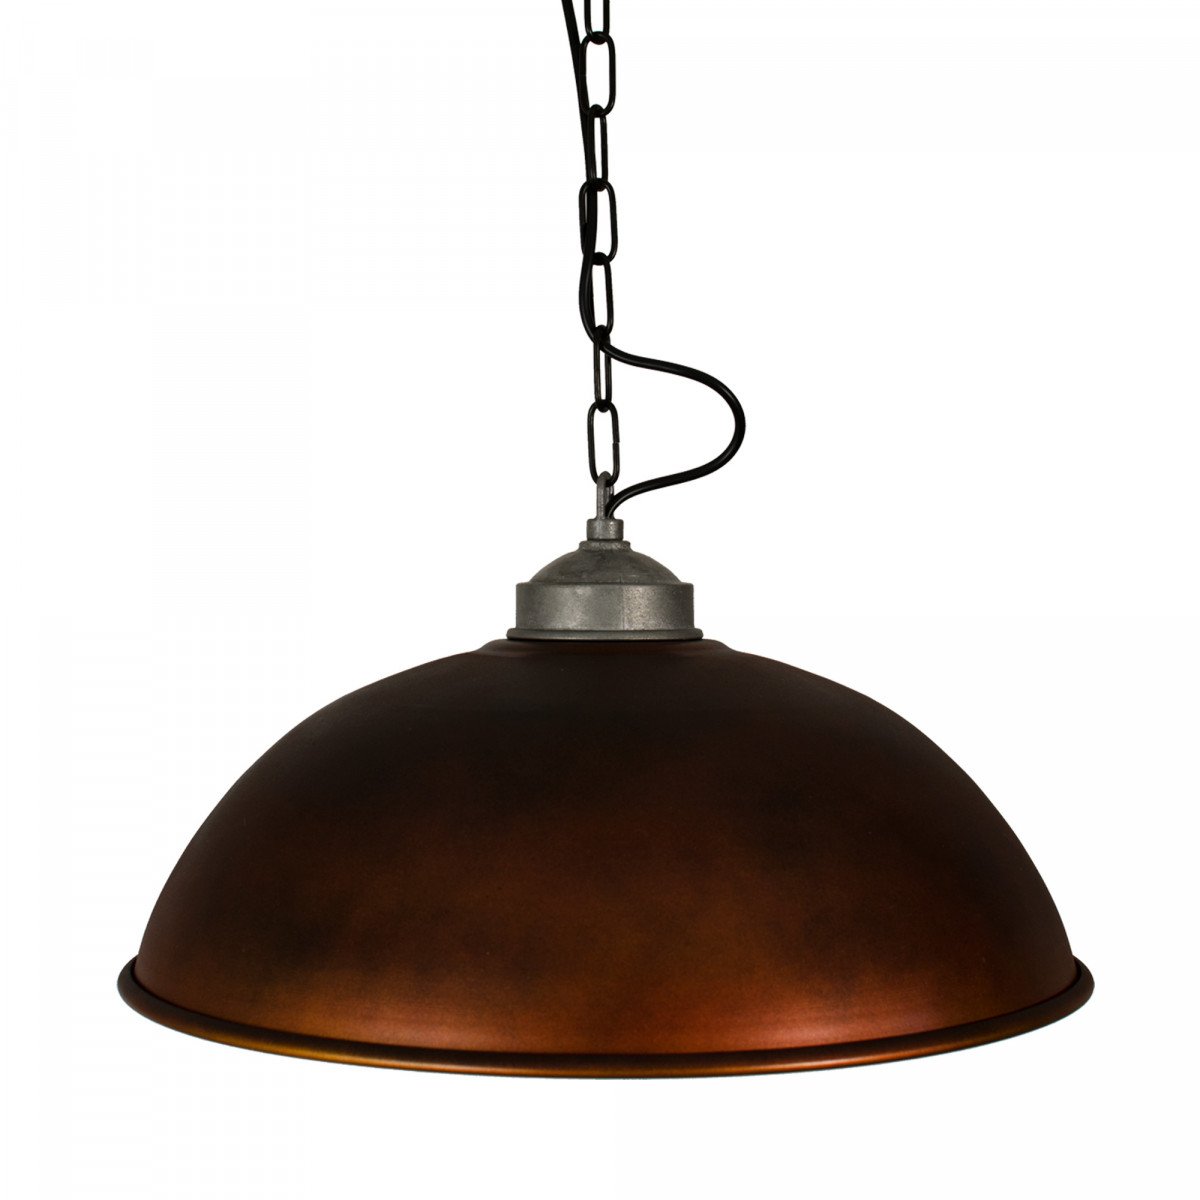 Lampe suspendue Industrial XL look cuivre (6503k8) de KS Lighting | Nostalux.fr